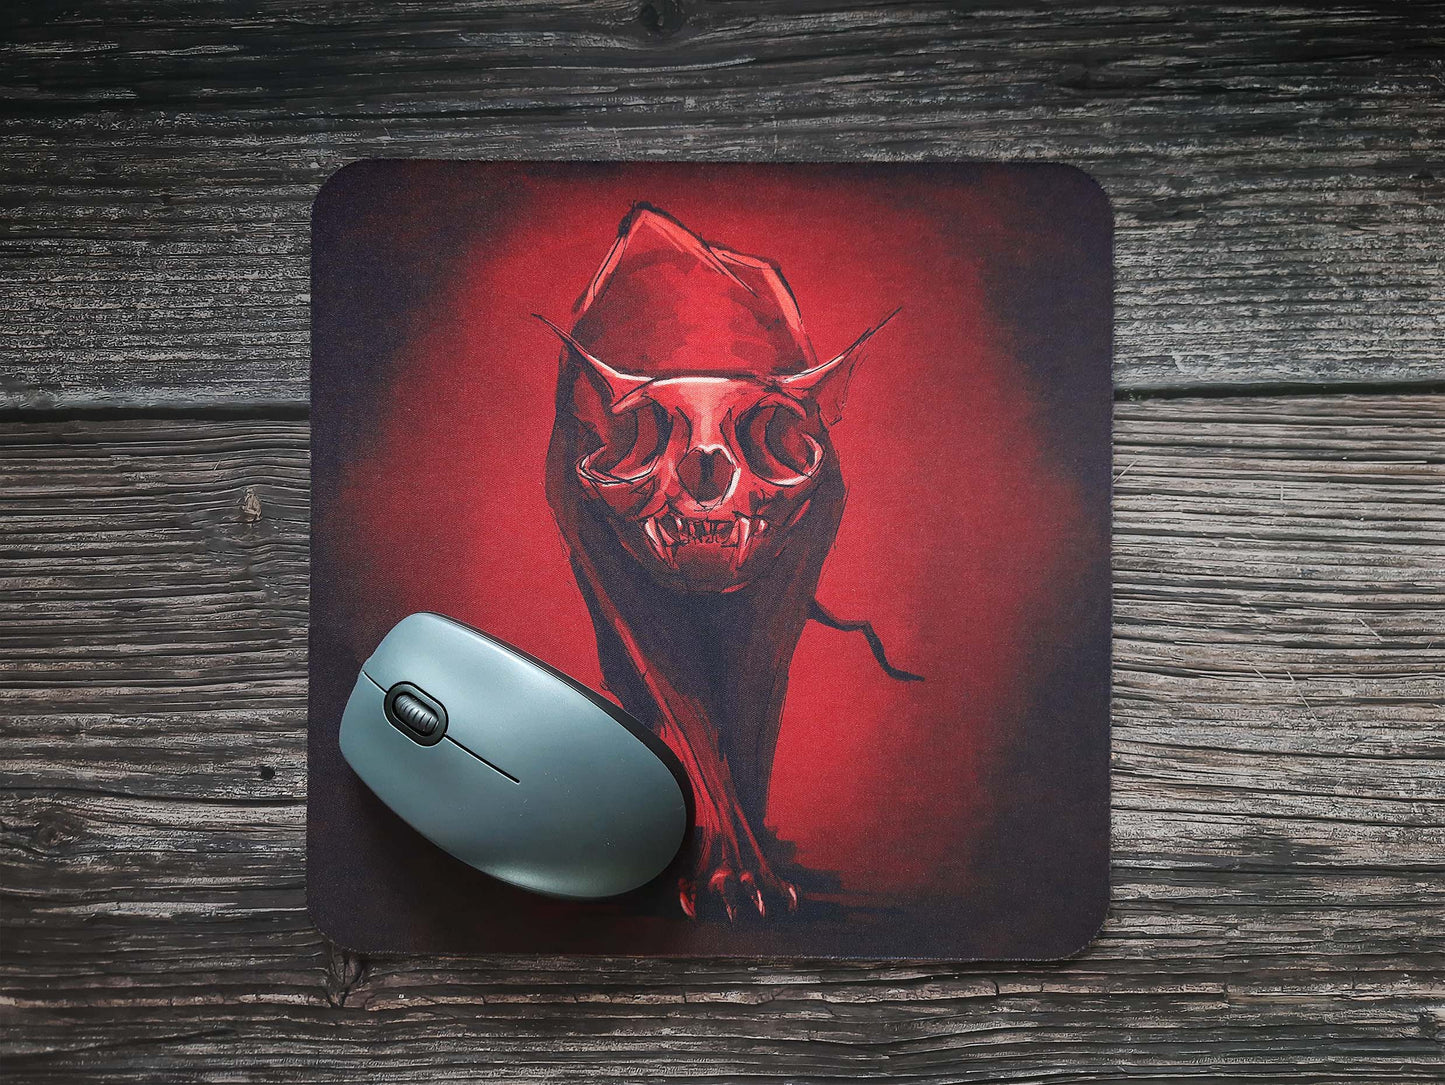 Mousepad textile "Zombiecat"